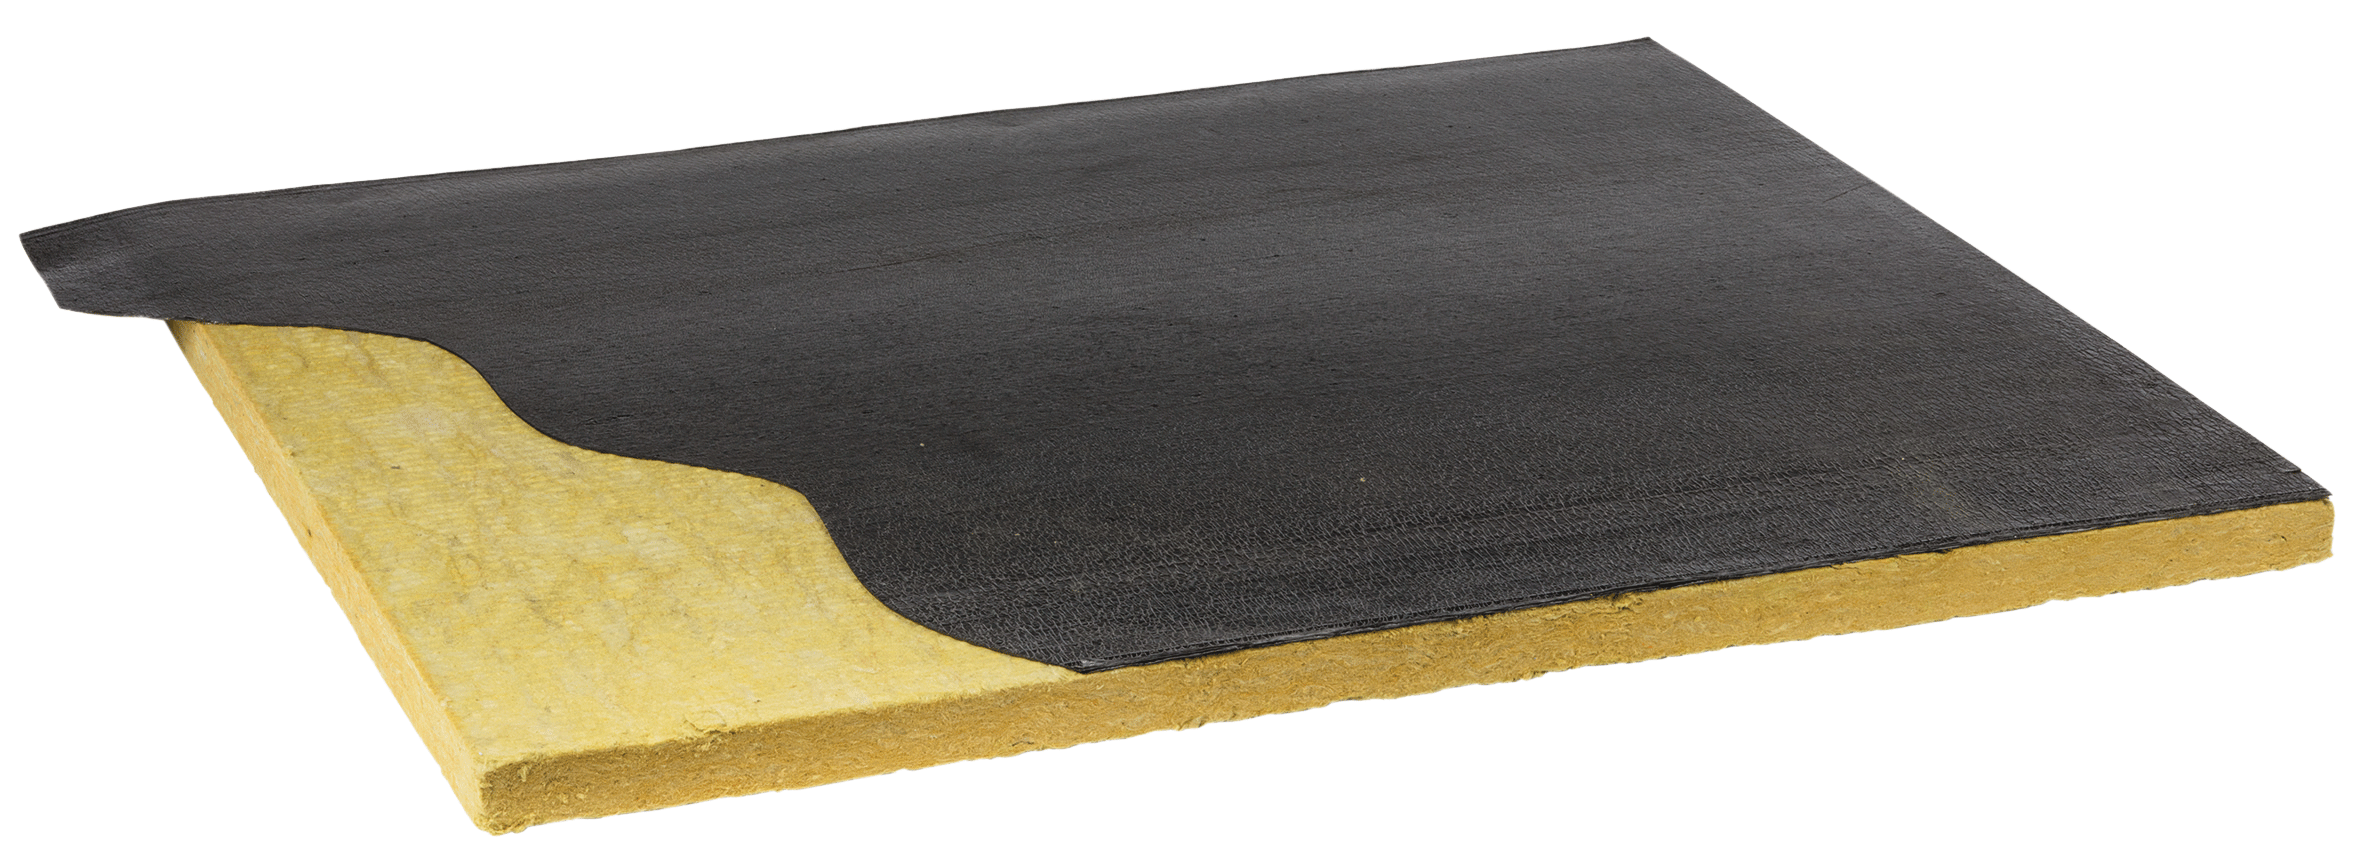 Pannello in lana di roccia bitumata fonoassorbente per coperture e coibentazione tetto Fopan RW nuova fopan